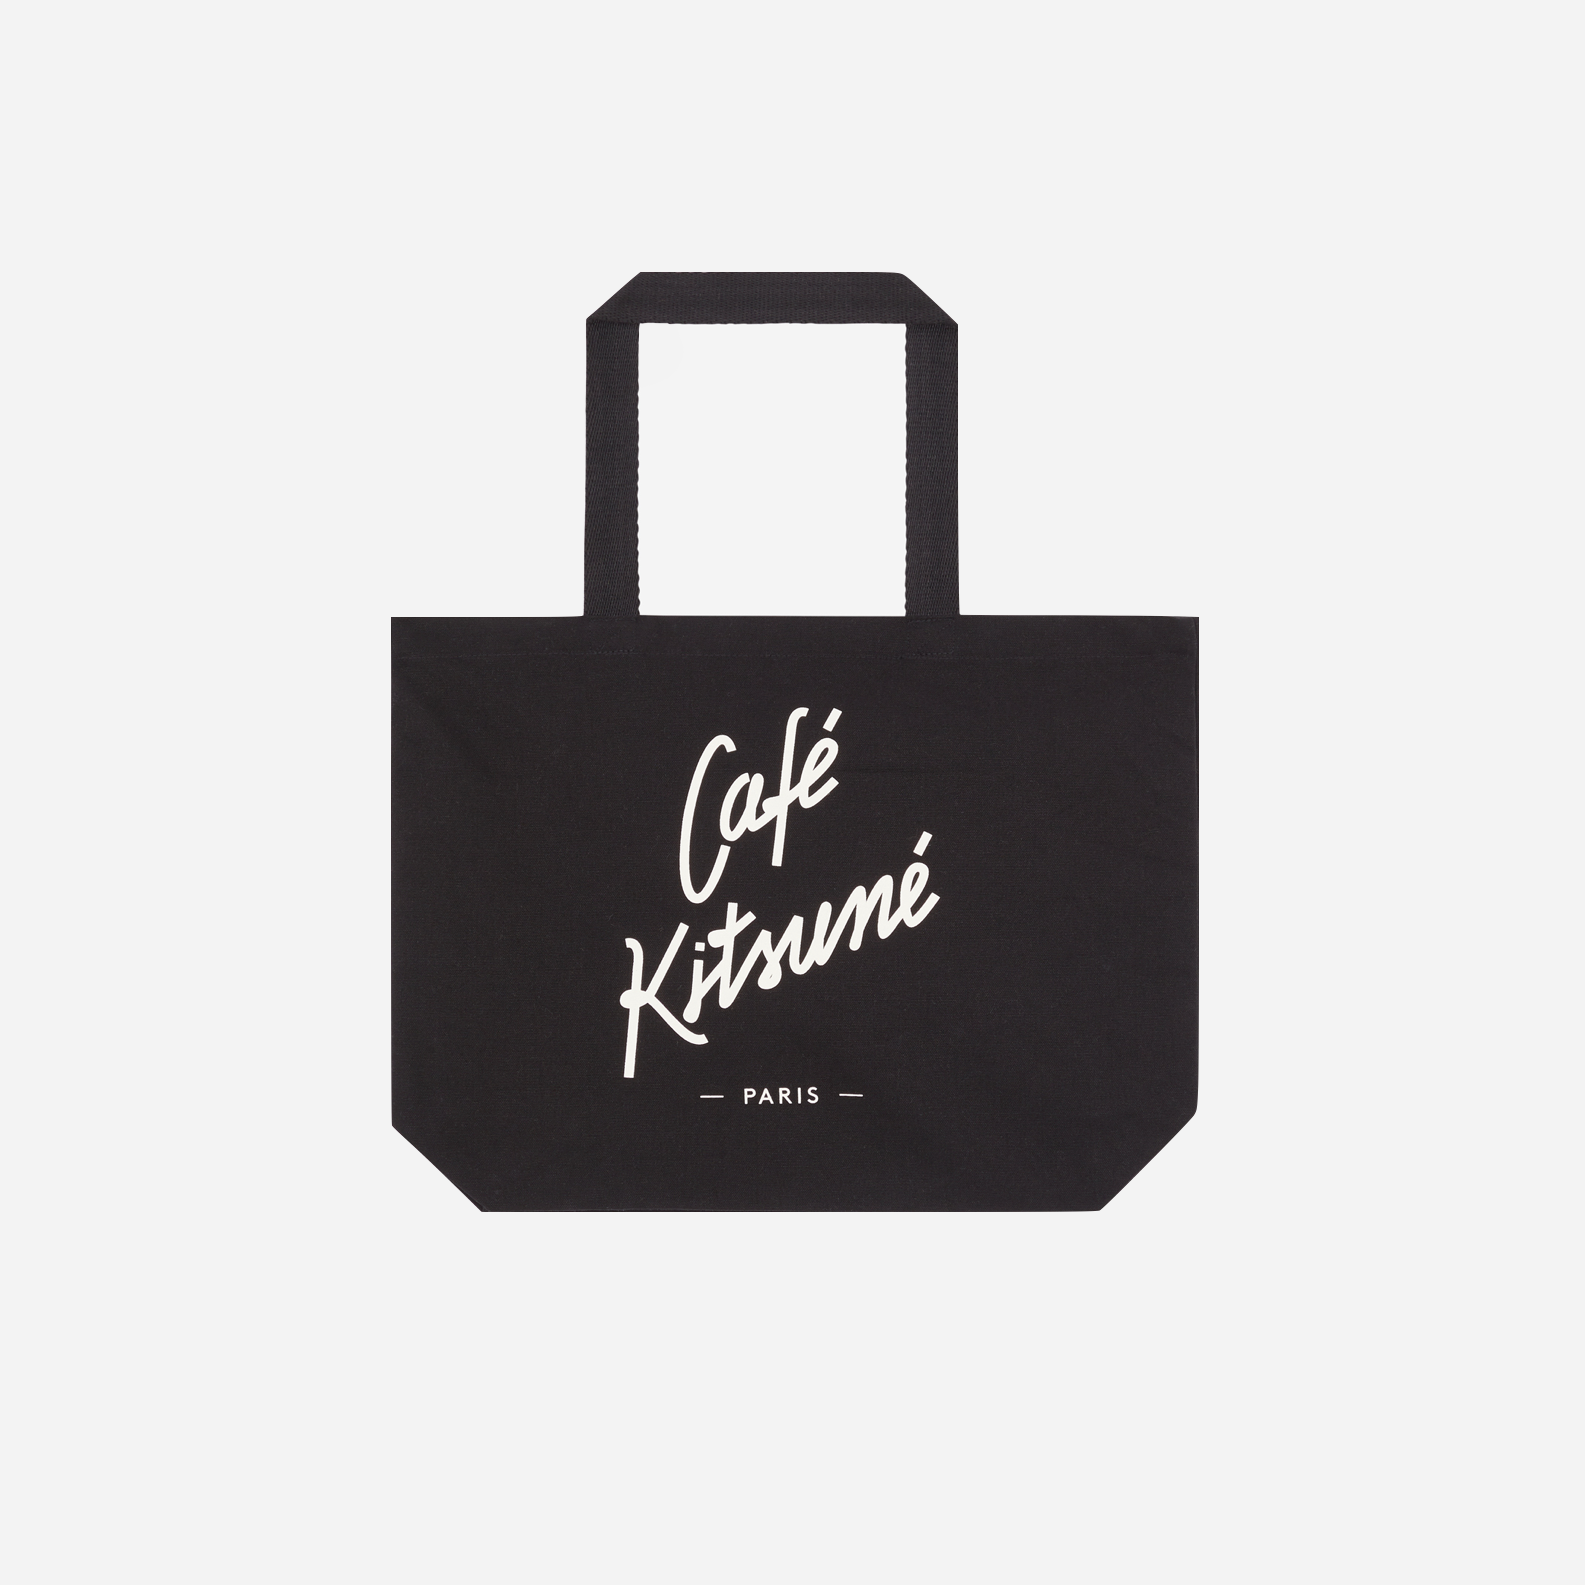 Café Kitsuné Tote Bag